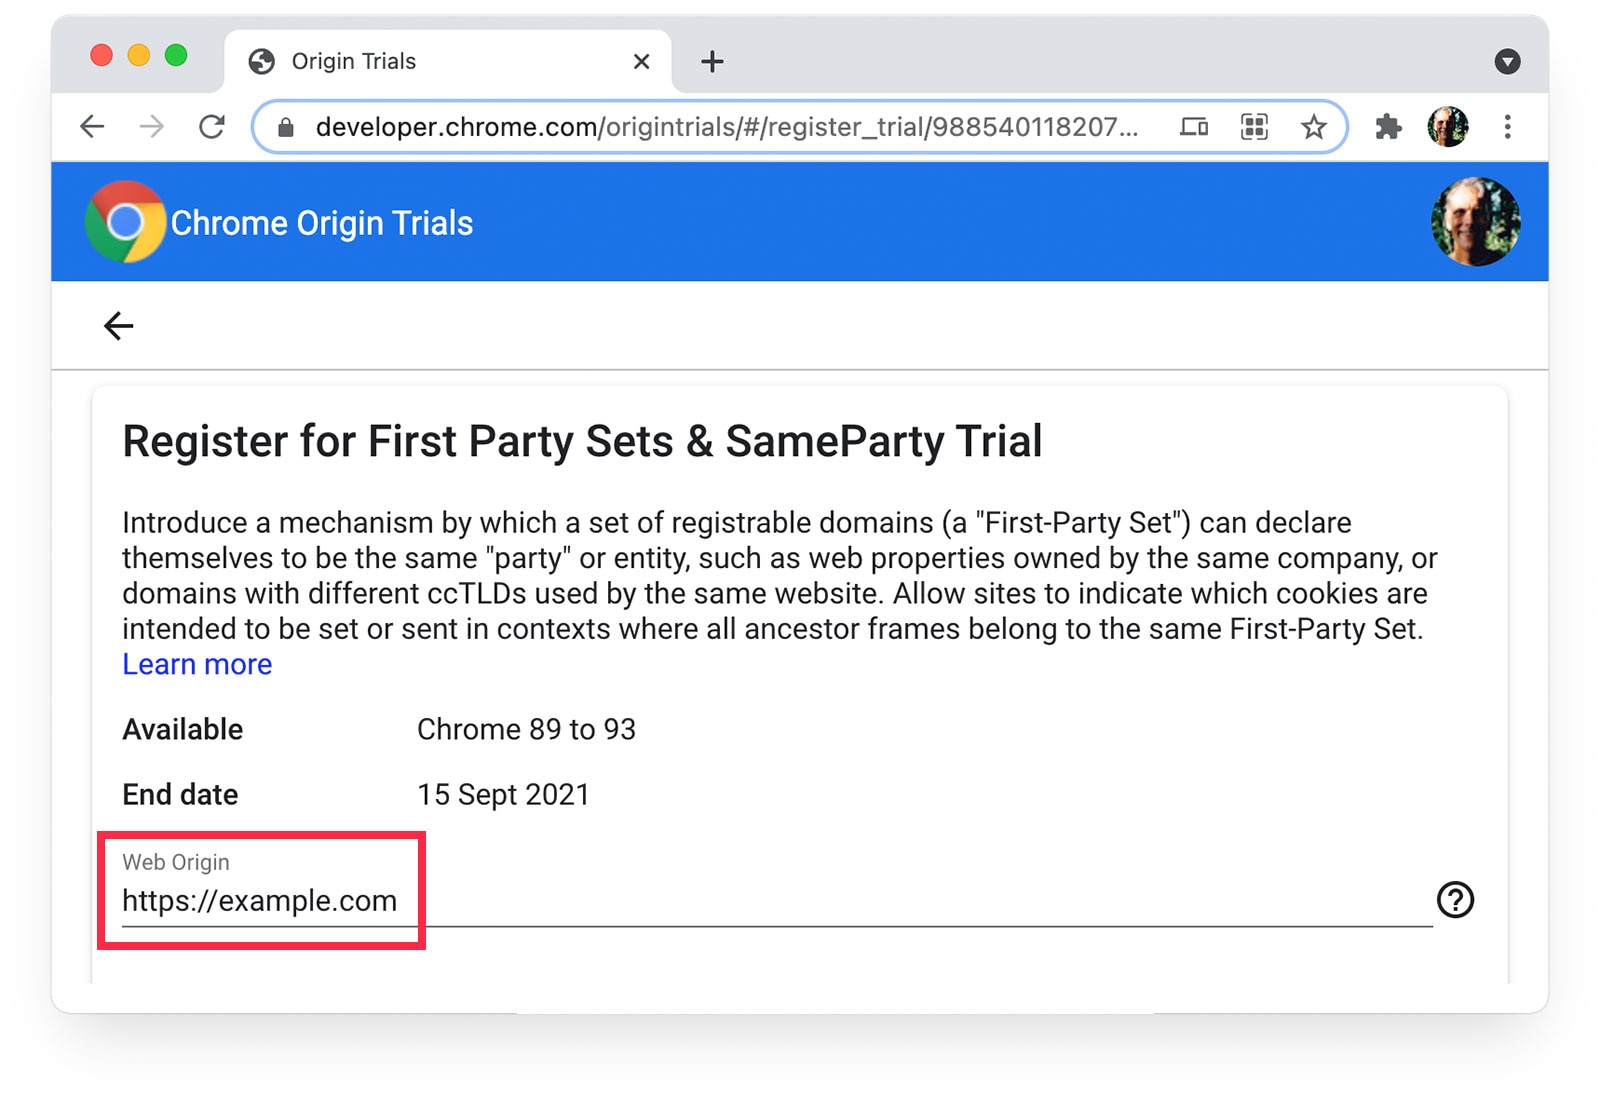 「ウェブオリジン」として「https://example.com」が選択されている Chrome オリジン トライアル ページ